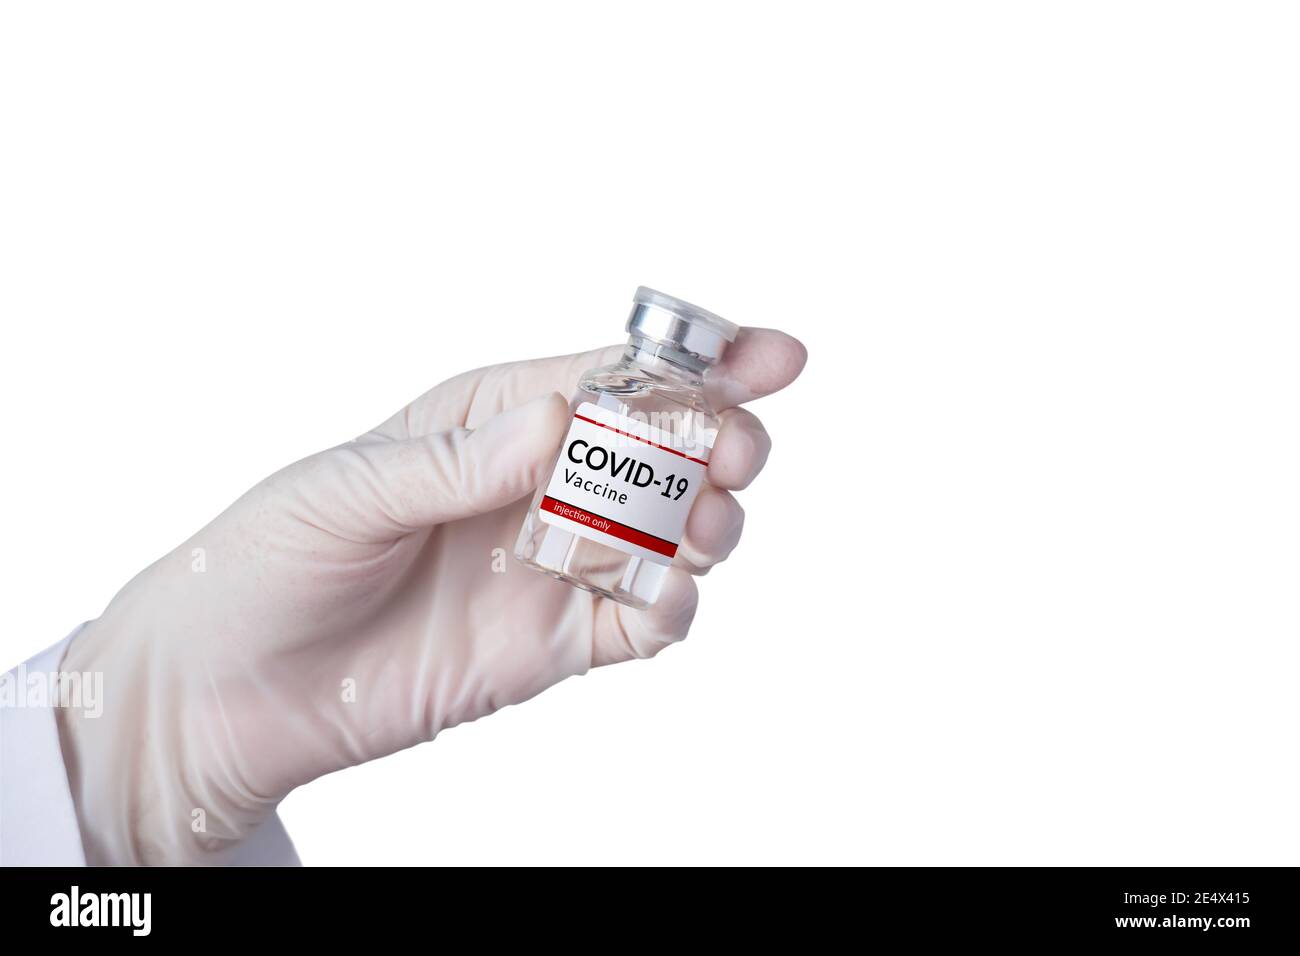 Concetto di vaccino e immunizzazione COVID-19 con coronavirus. Guanto bianco per uso iniettabile con flacone di vaccino isolato su fondo bianco Foto Stock